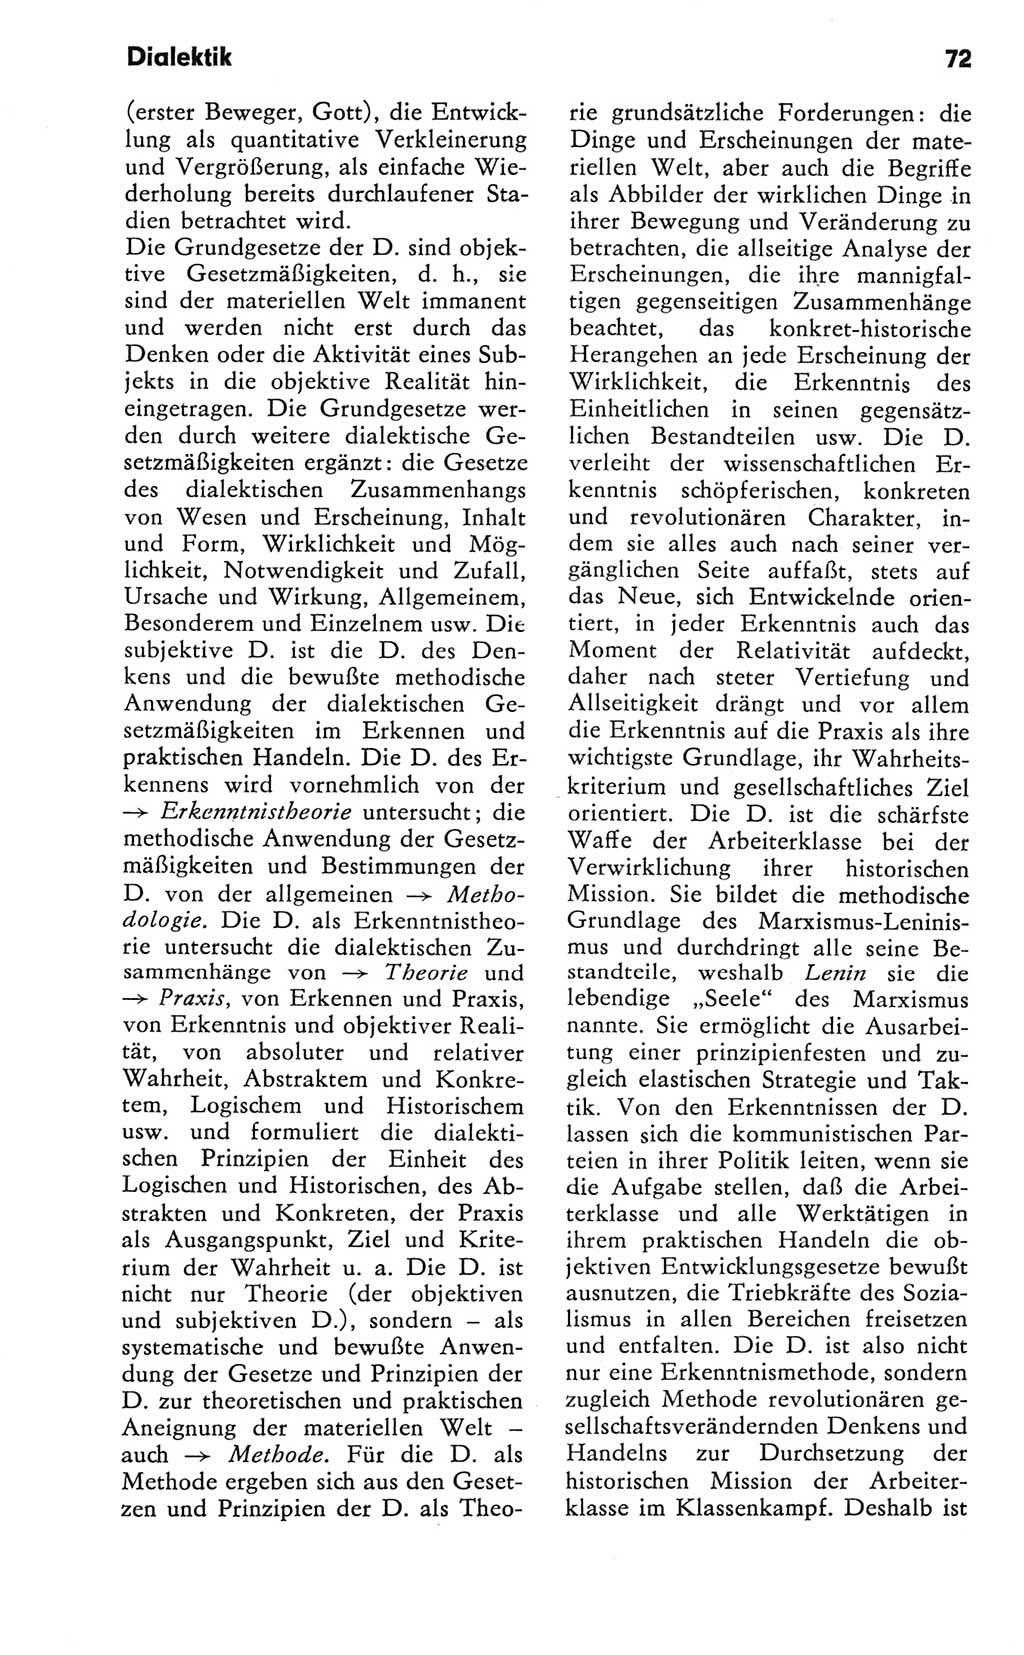 Kleines Wörterbuch der marxistisch-leninistischen Philosophie [Deutsche Demokratische Republik (DDR)] 1981, Seite 72 (Kl. Wb. ML Phil. DDR 1981, S. 72)